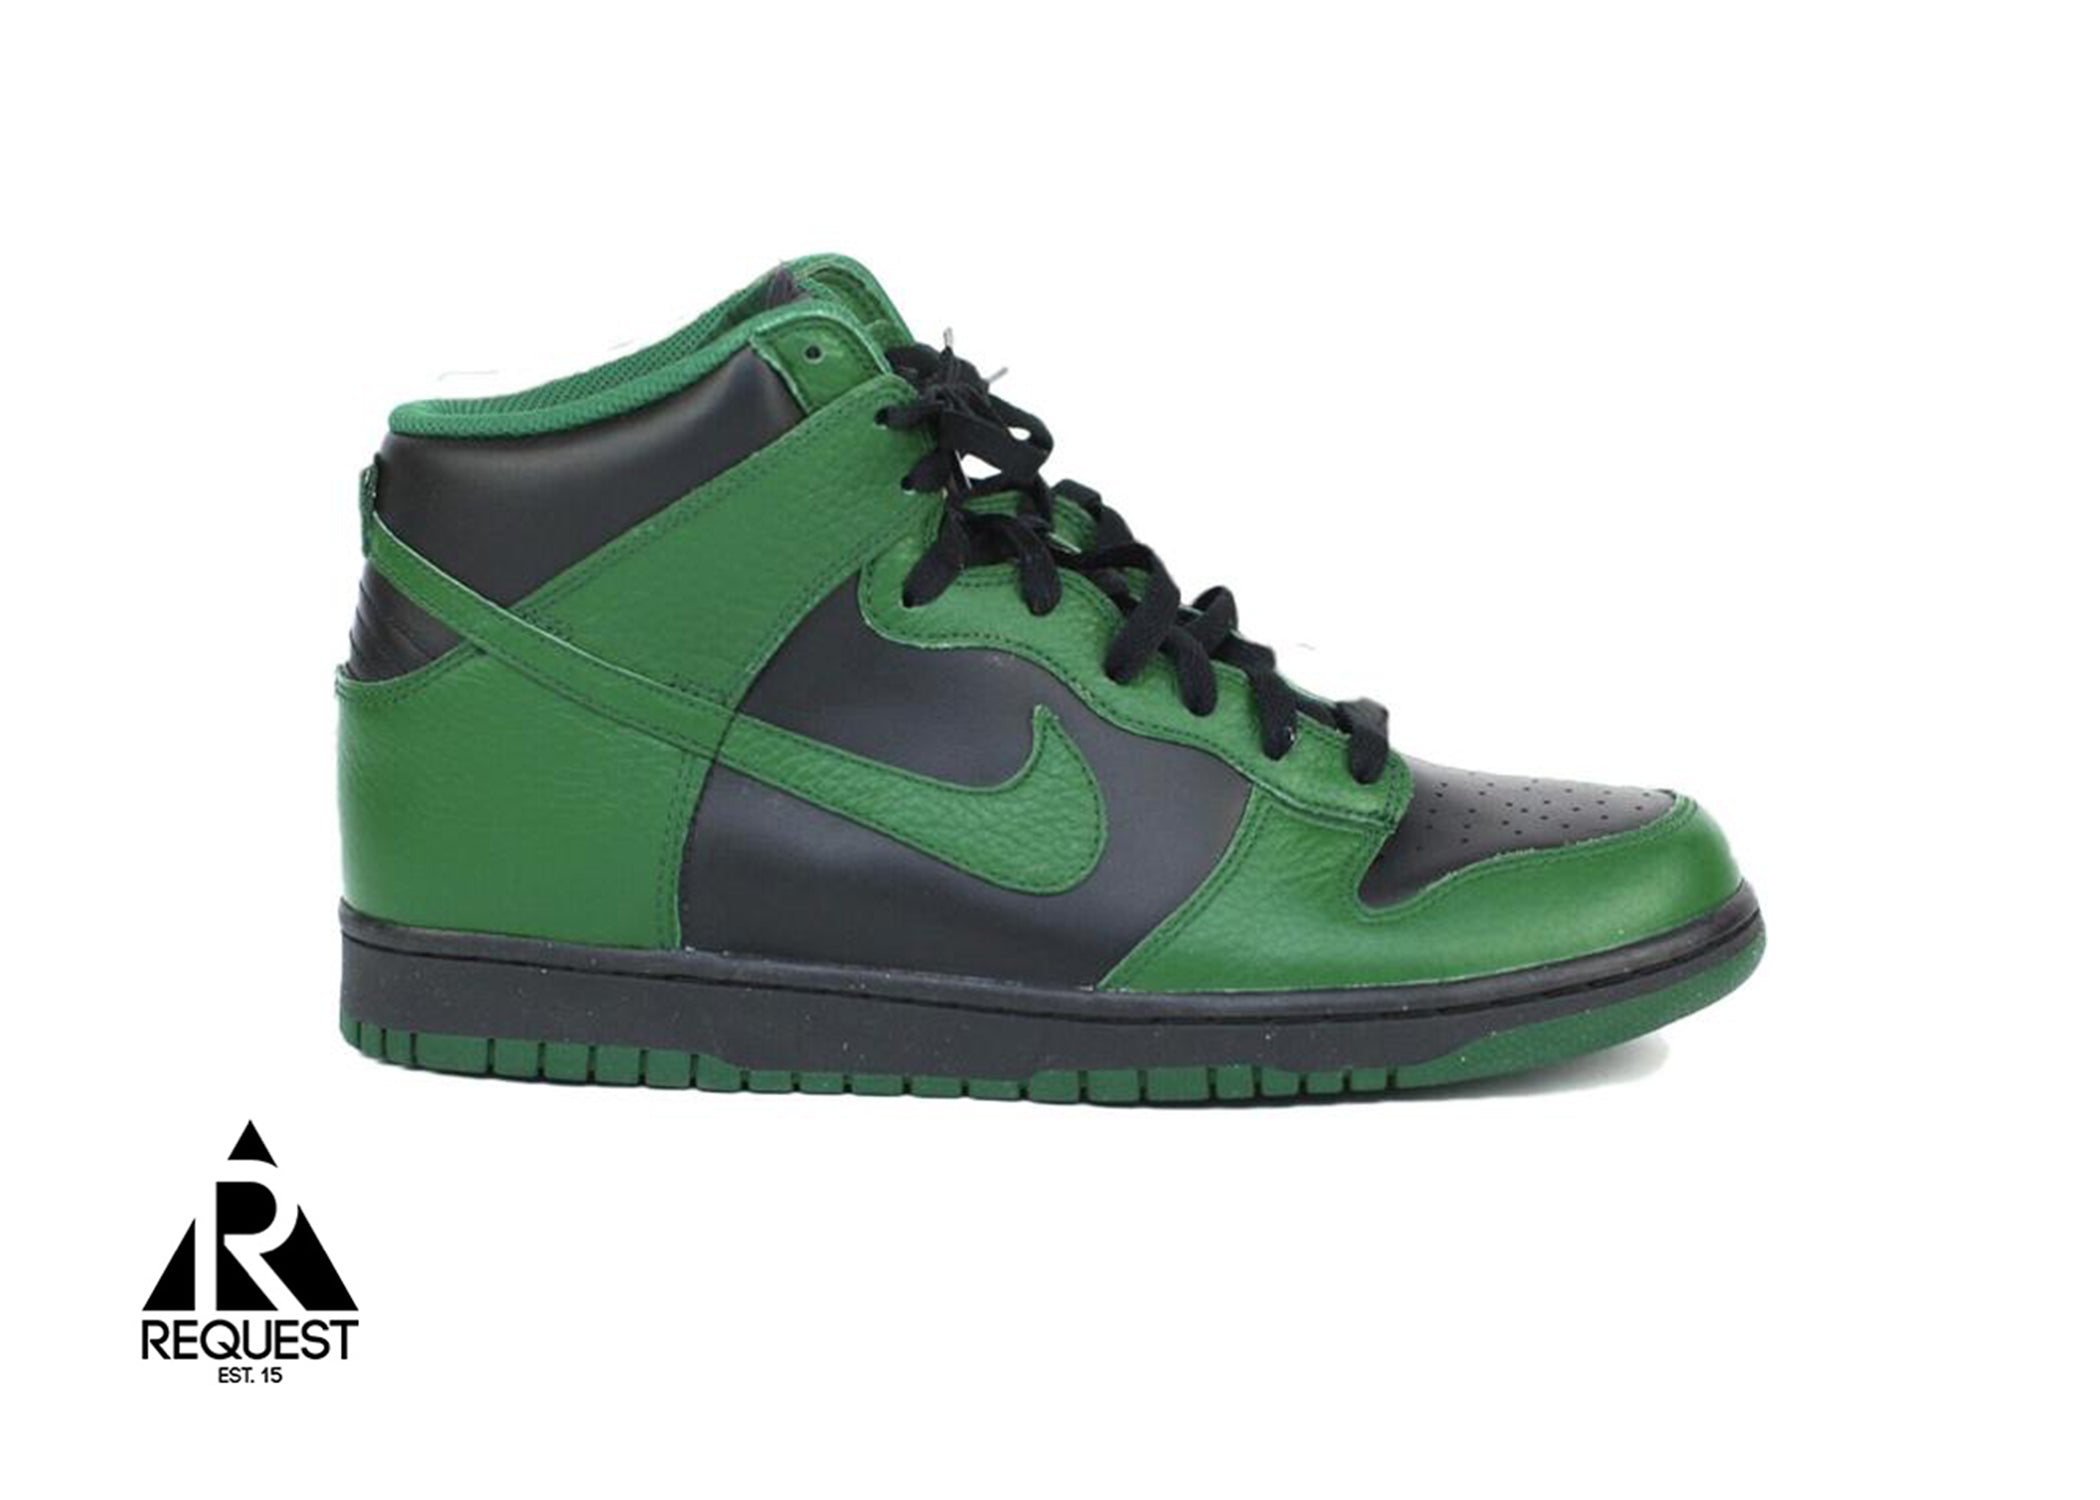 Nike Dunk High “Gorge Green”